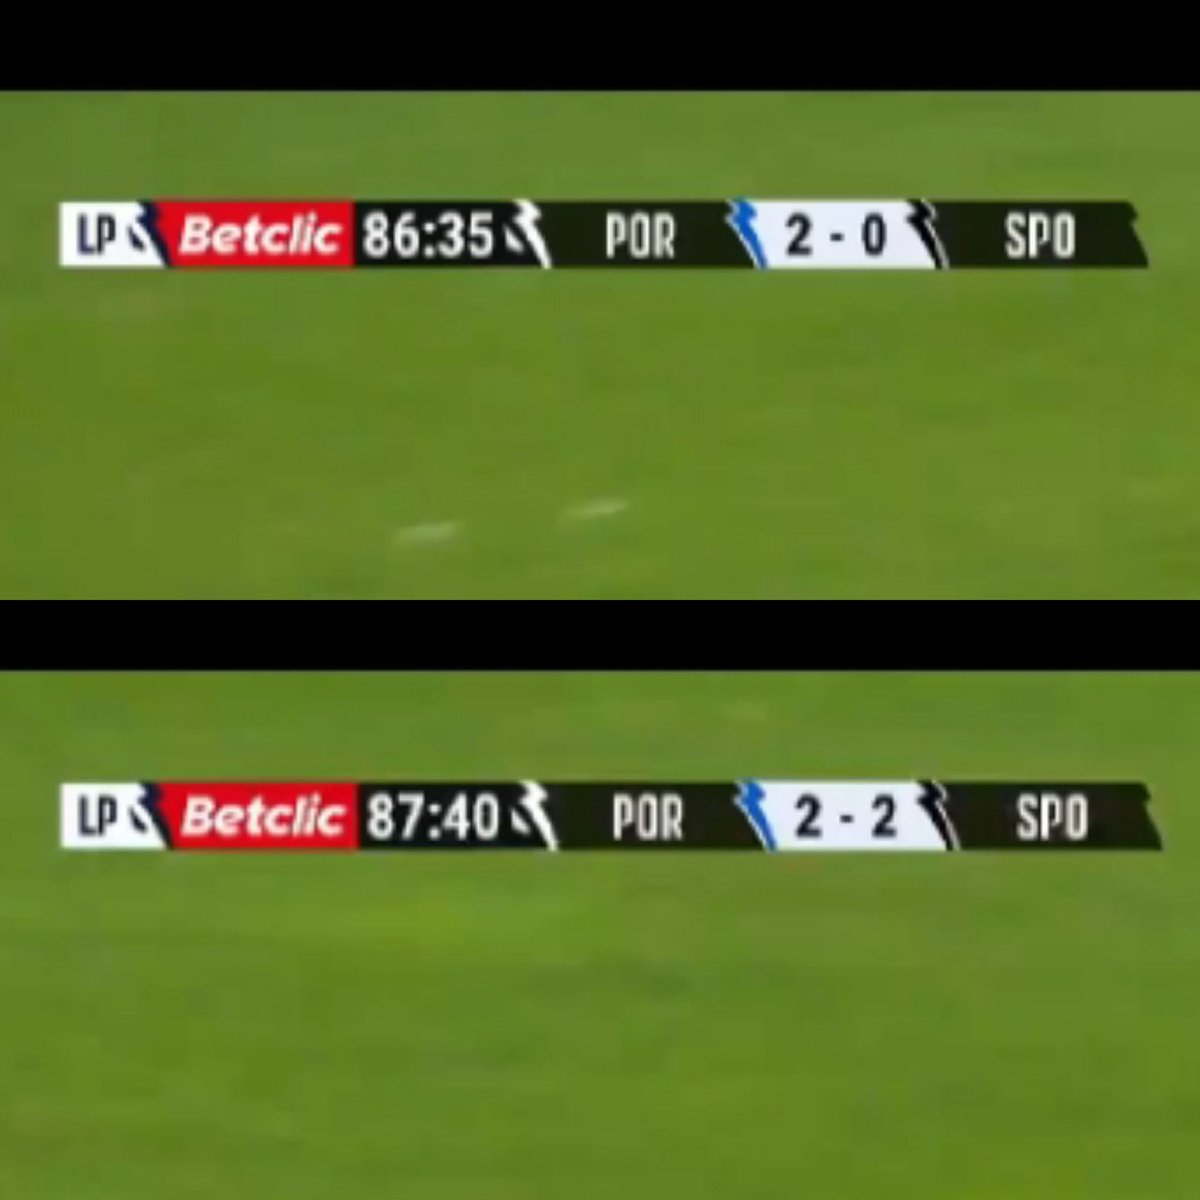 🚨ALERTA RECORDE🚨

Na continuação da inadmissível época 23/24 do @FCPorto , no jogo de hoje da @ligaportugal , conseguimos 2 golos em 65 segundos, repito 65 segundos!!!

Muitos Parabéns a todos os envolvidos!🤡

#FCPorto